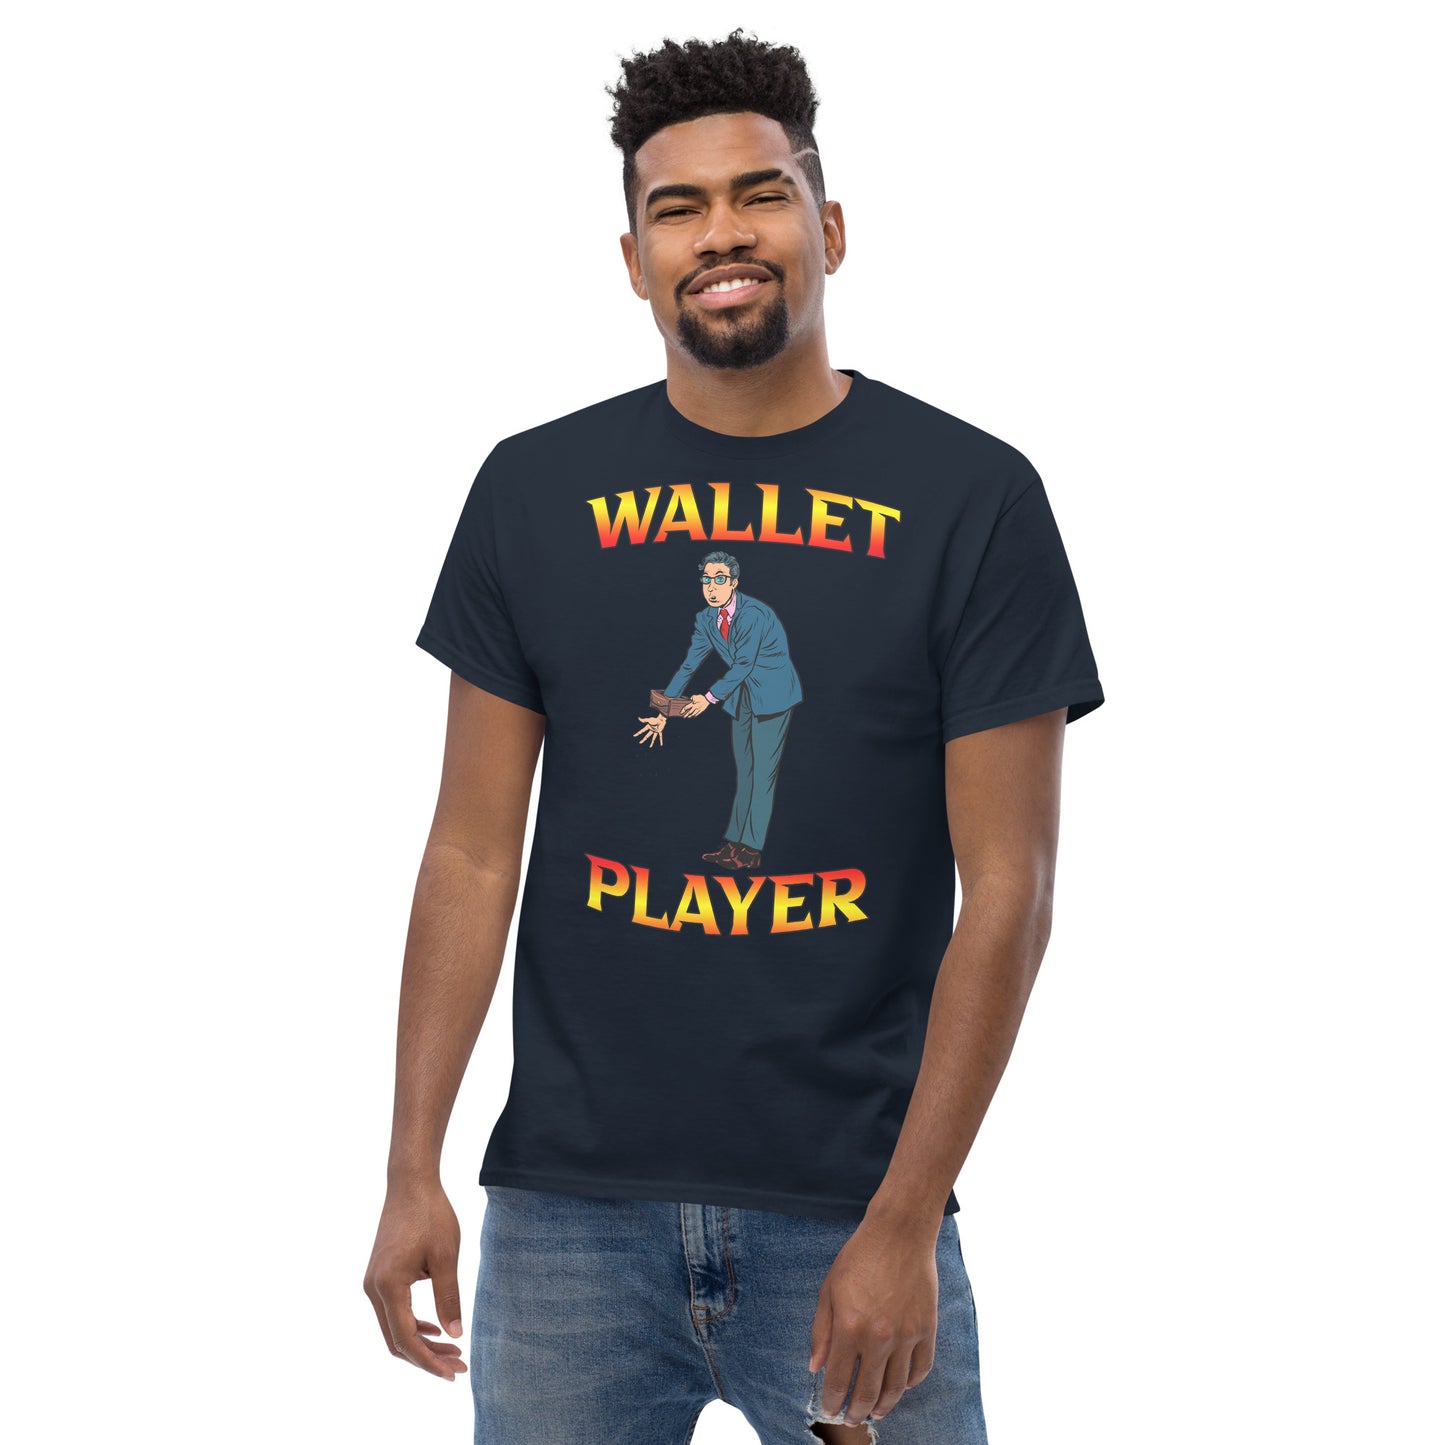 Wallet Player - Men's tee